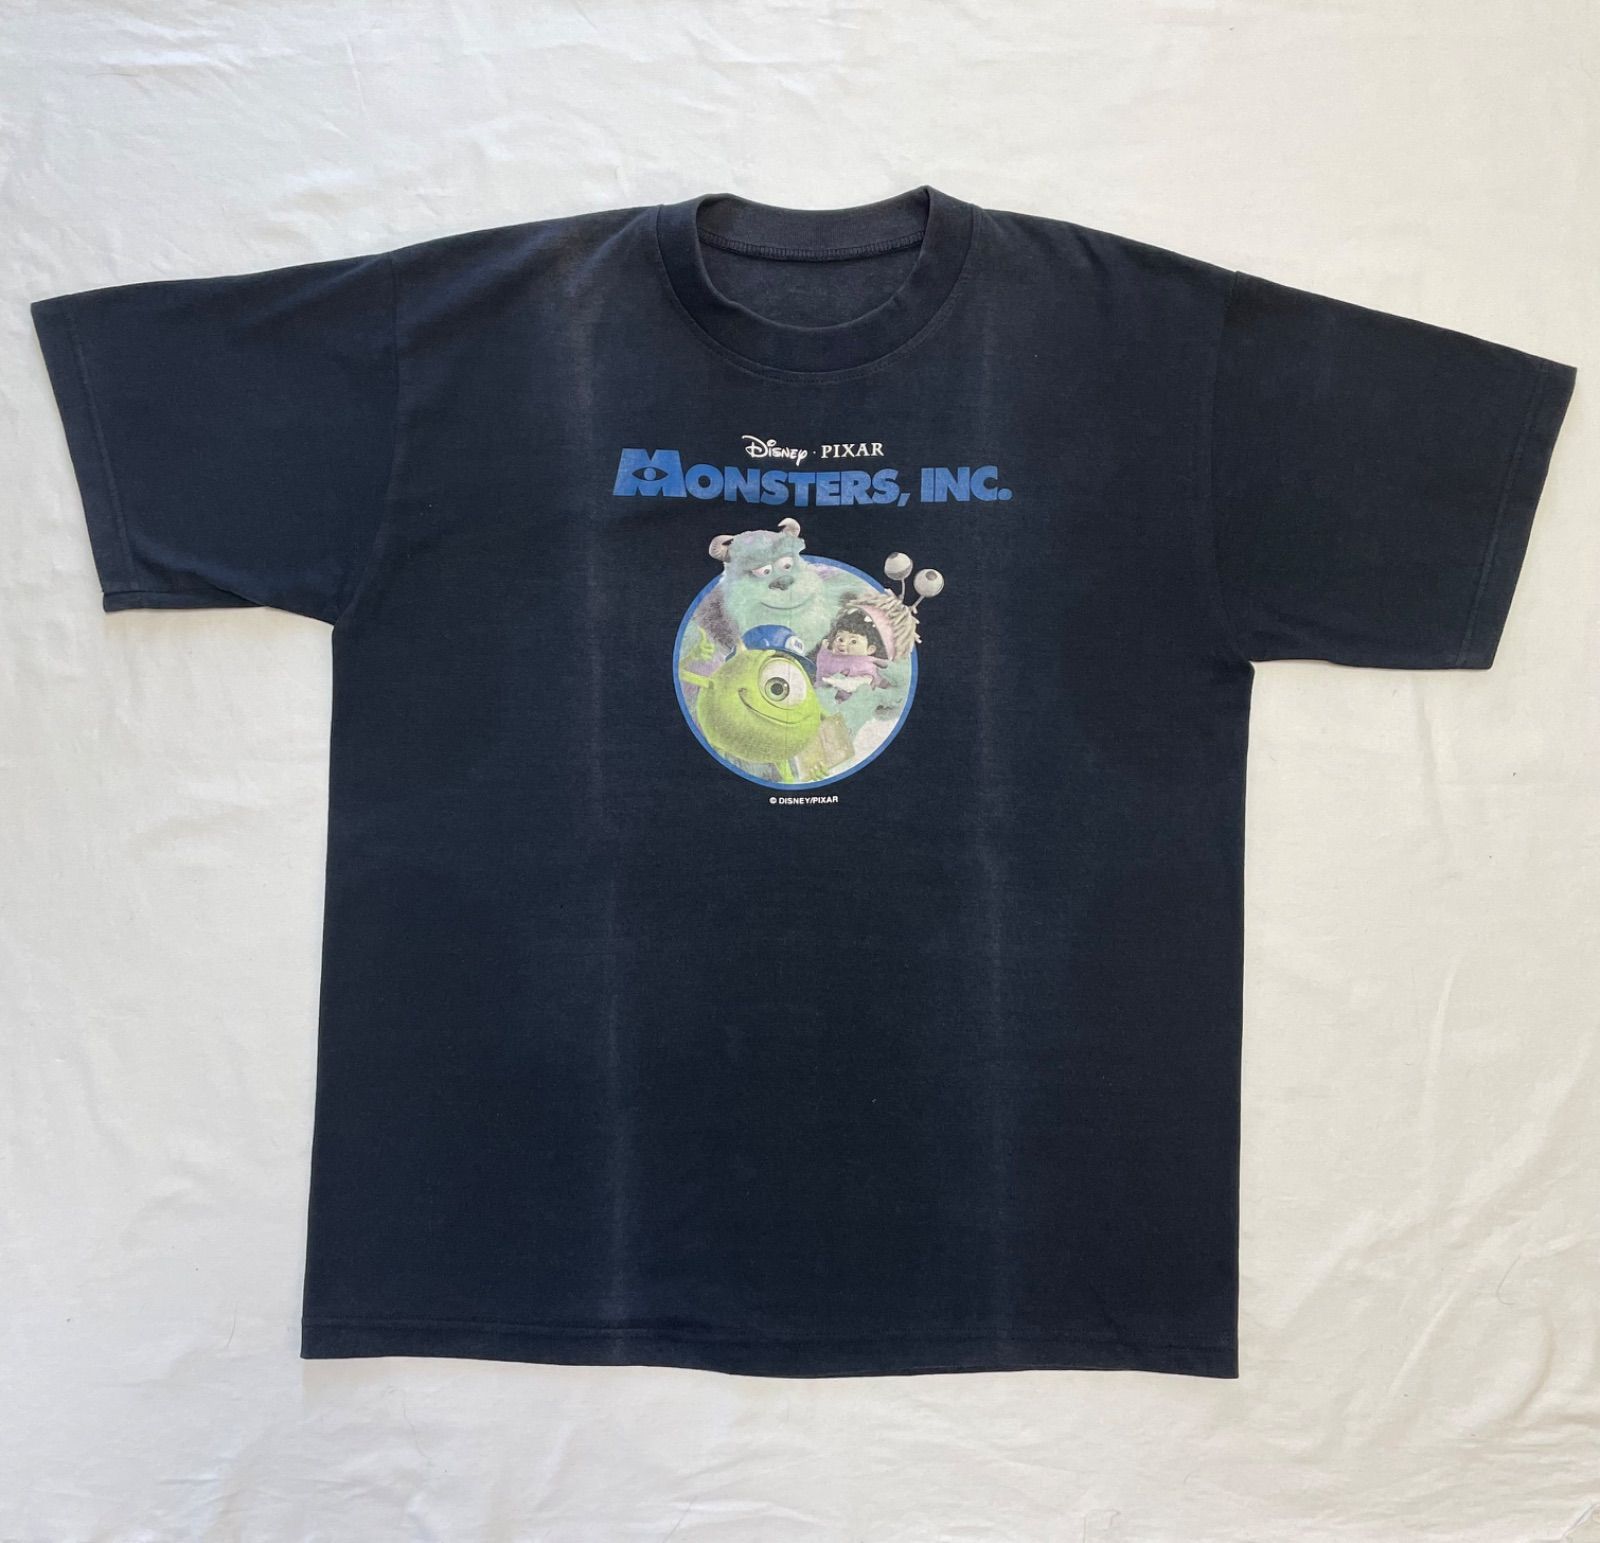 00s Monsters Inc Movie T-shirt モンスターズインク ピクサー 映画 ムービー プロモーション Tシャツ